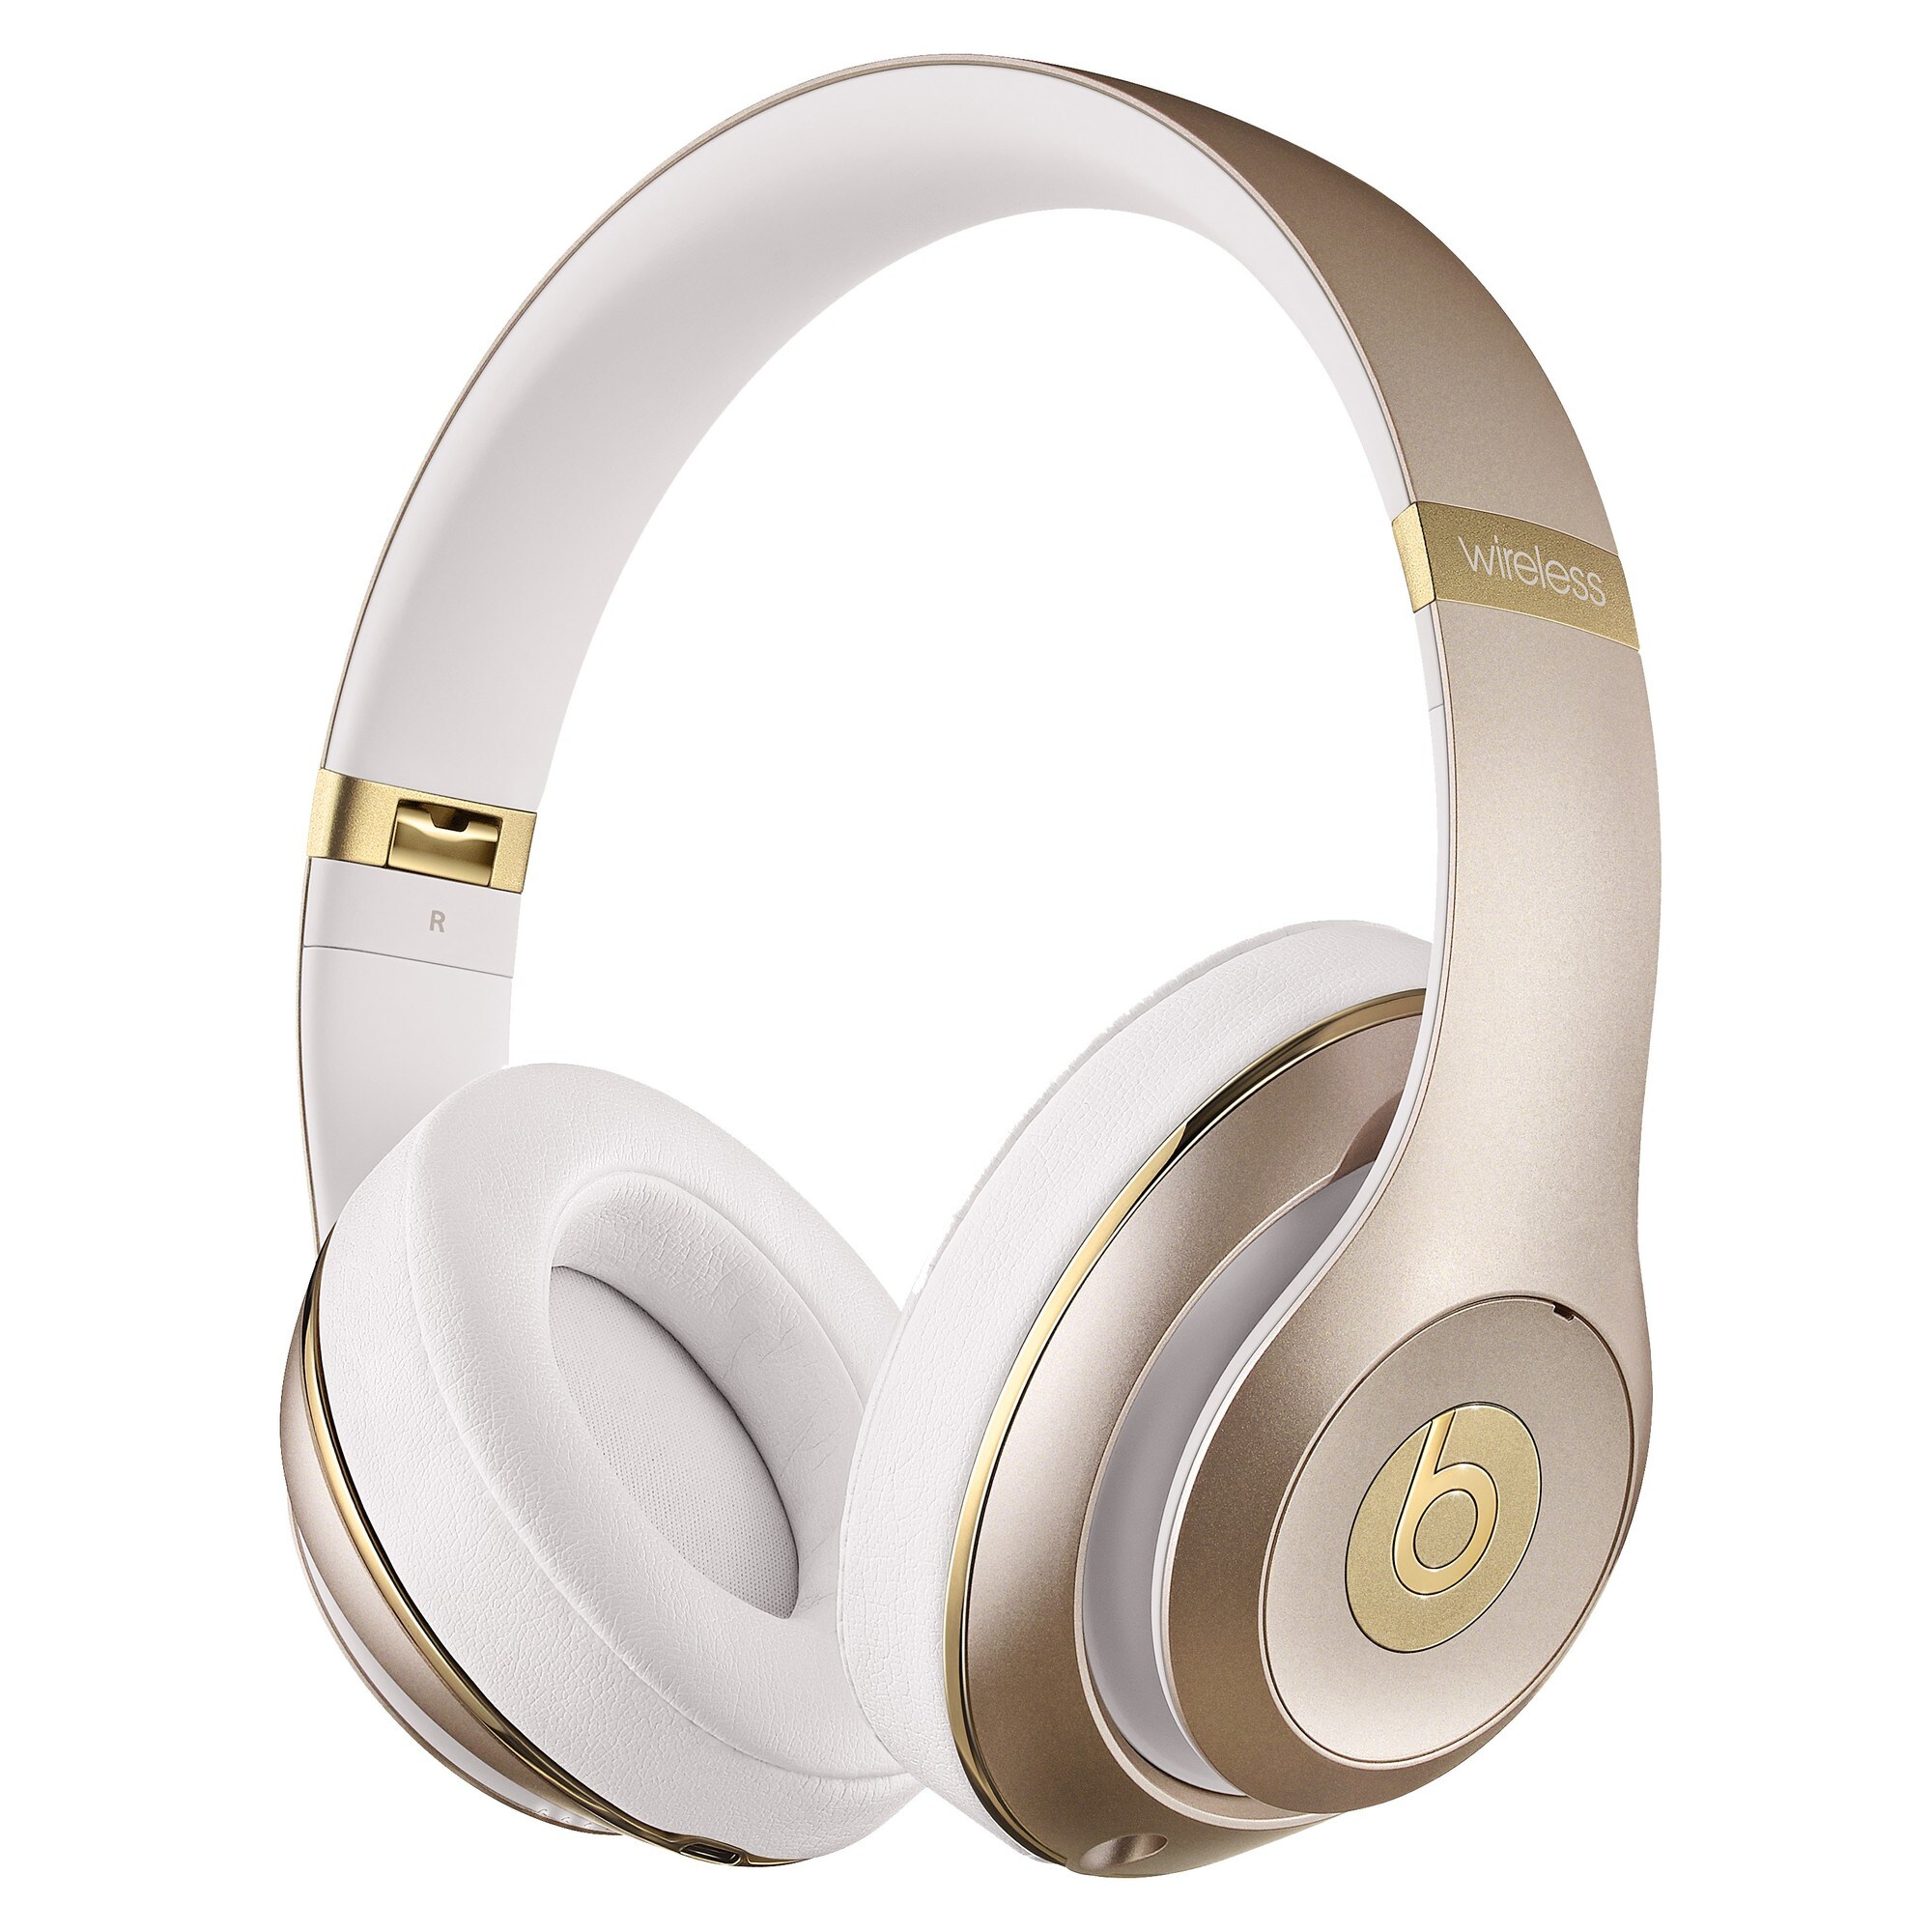 Beats Studio trådløse around-ear hovedtelefoner - guld | Elgiganten